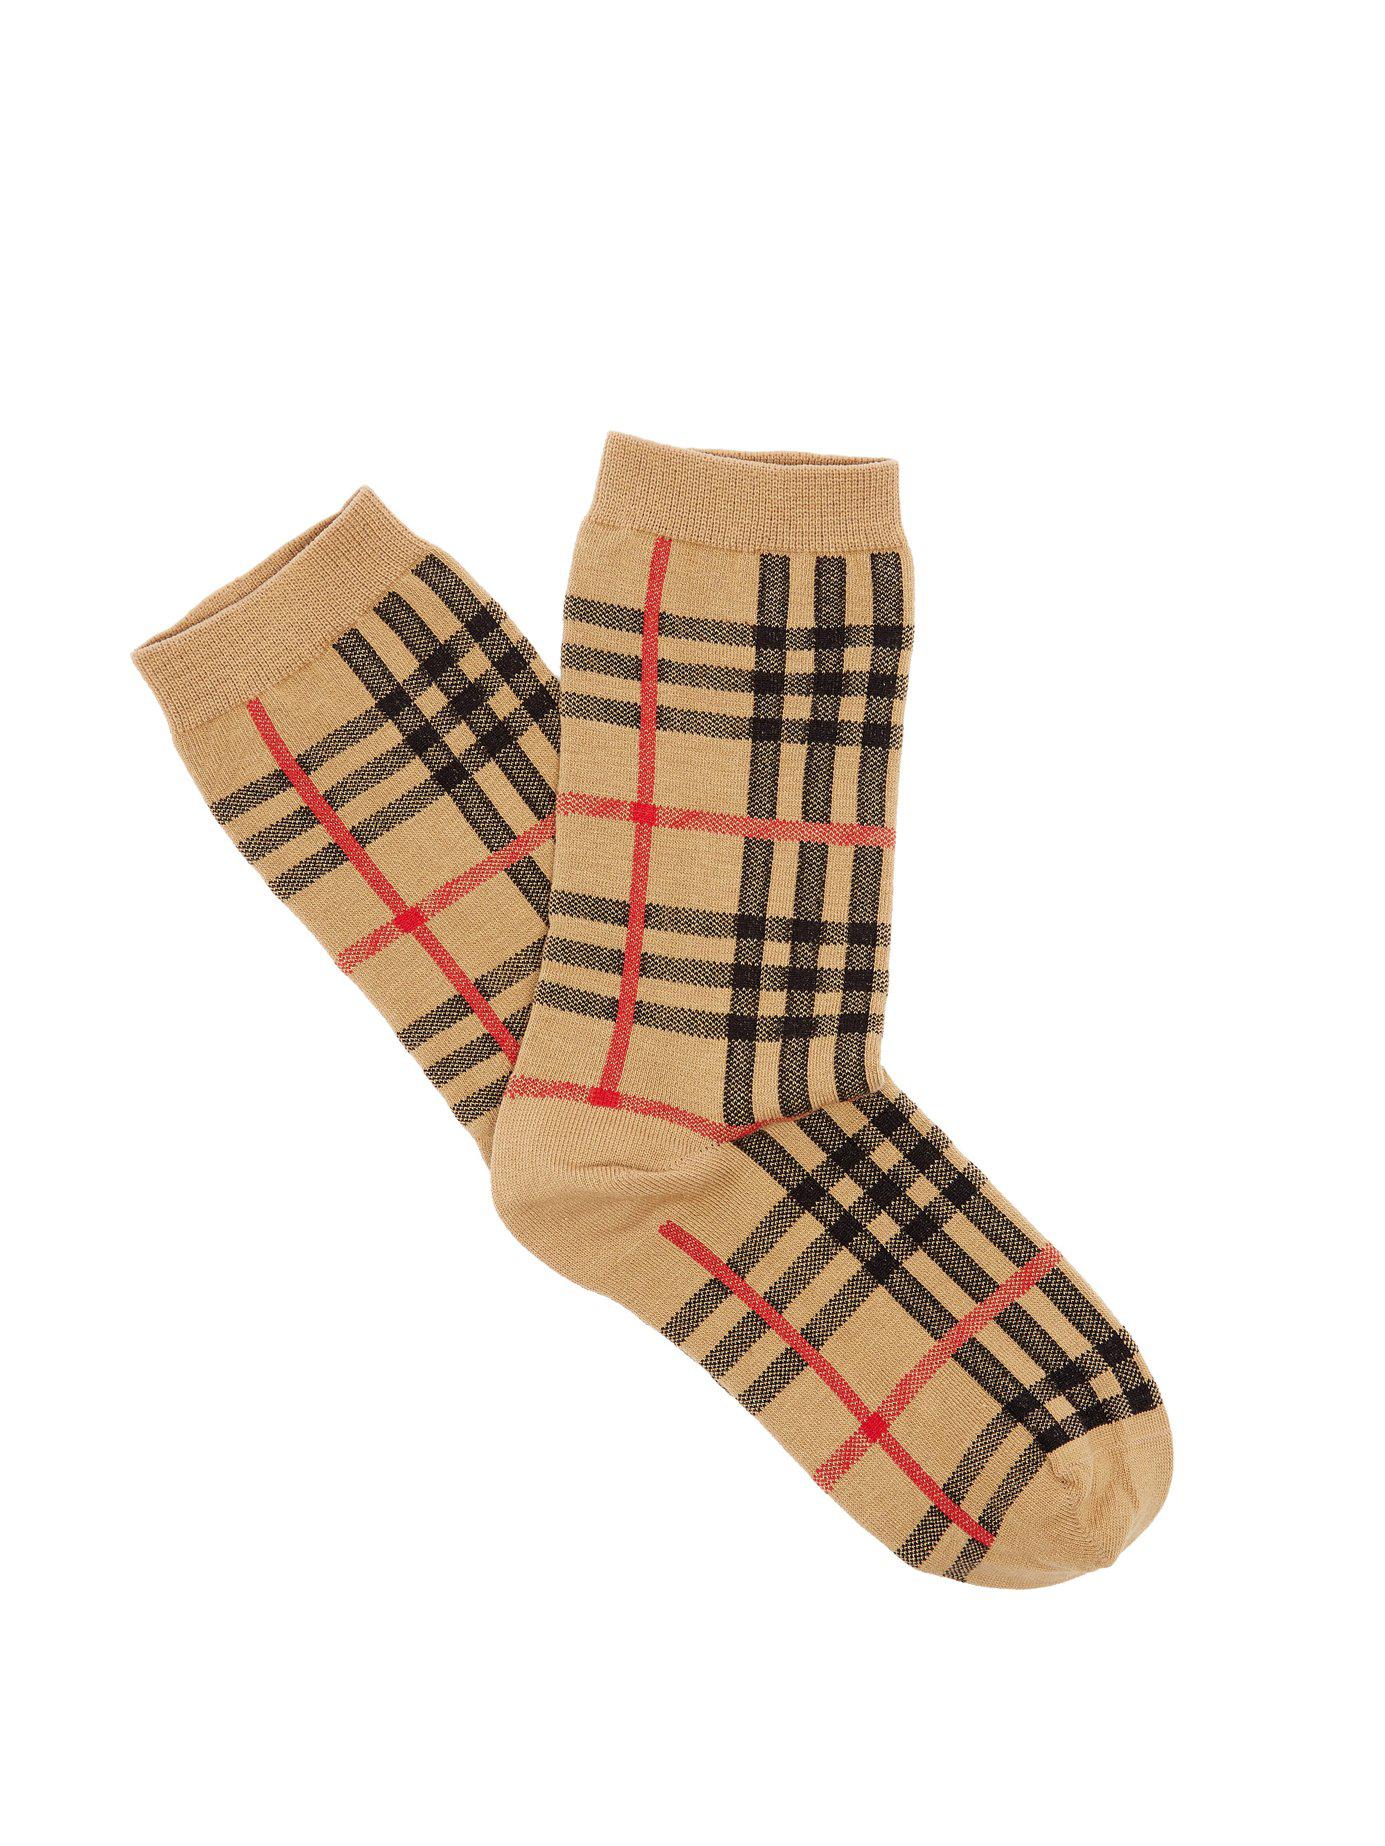 Burberry Vintage Check Cotton Blend Socks In Beige Natural For Men Lyst ...